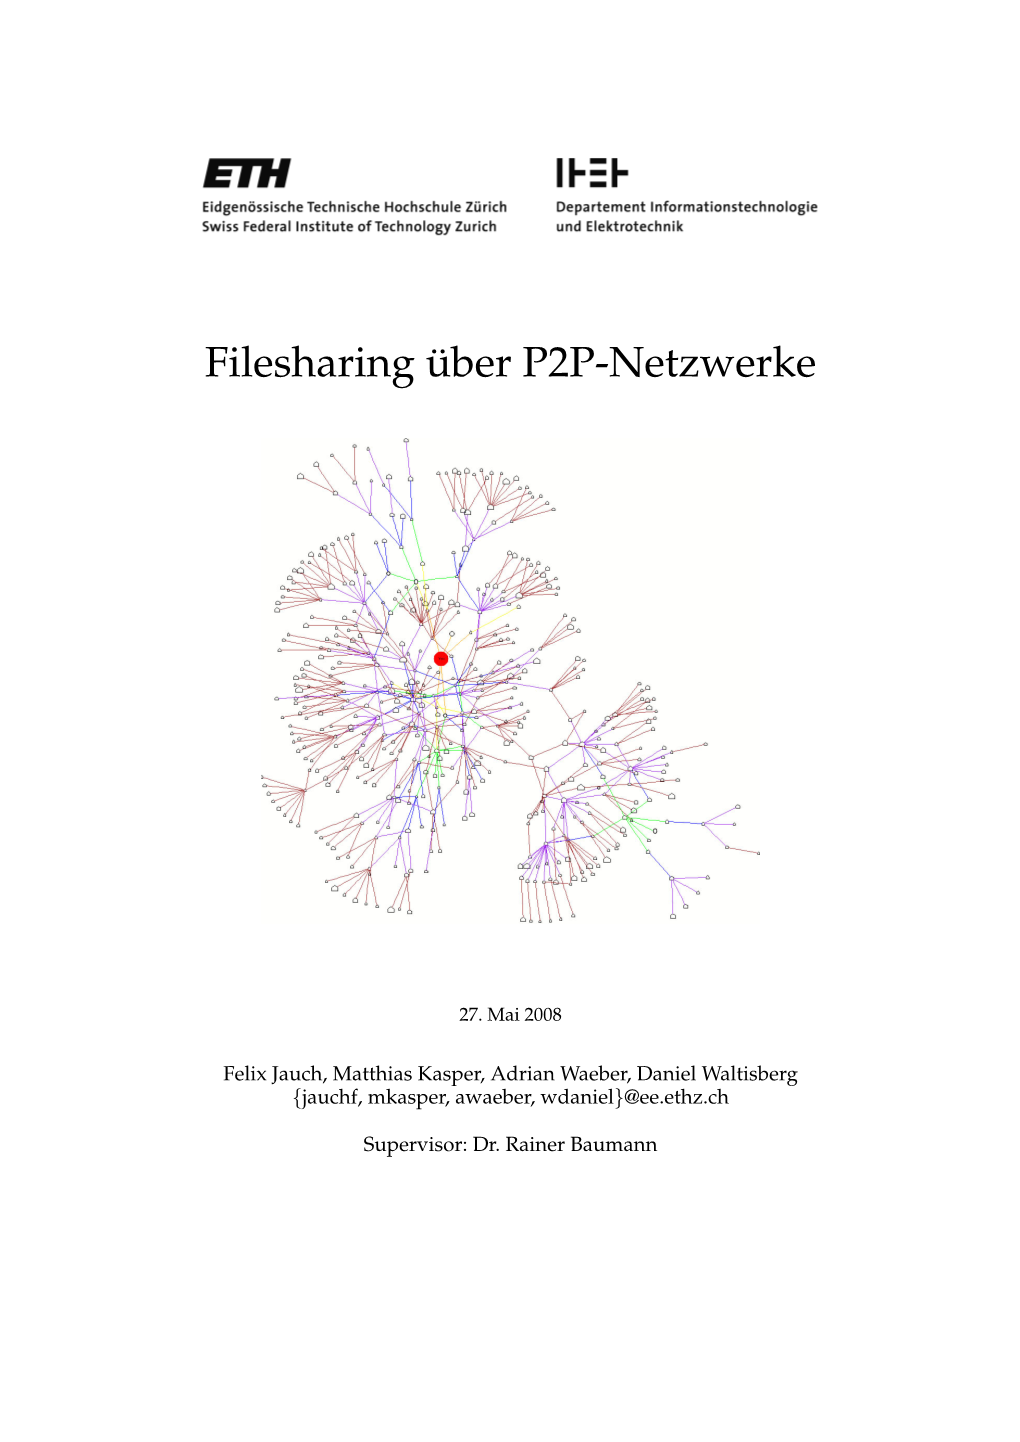 Filesharing Über P2P-Netzwerke